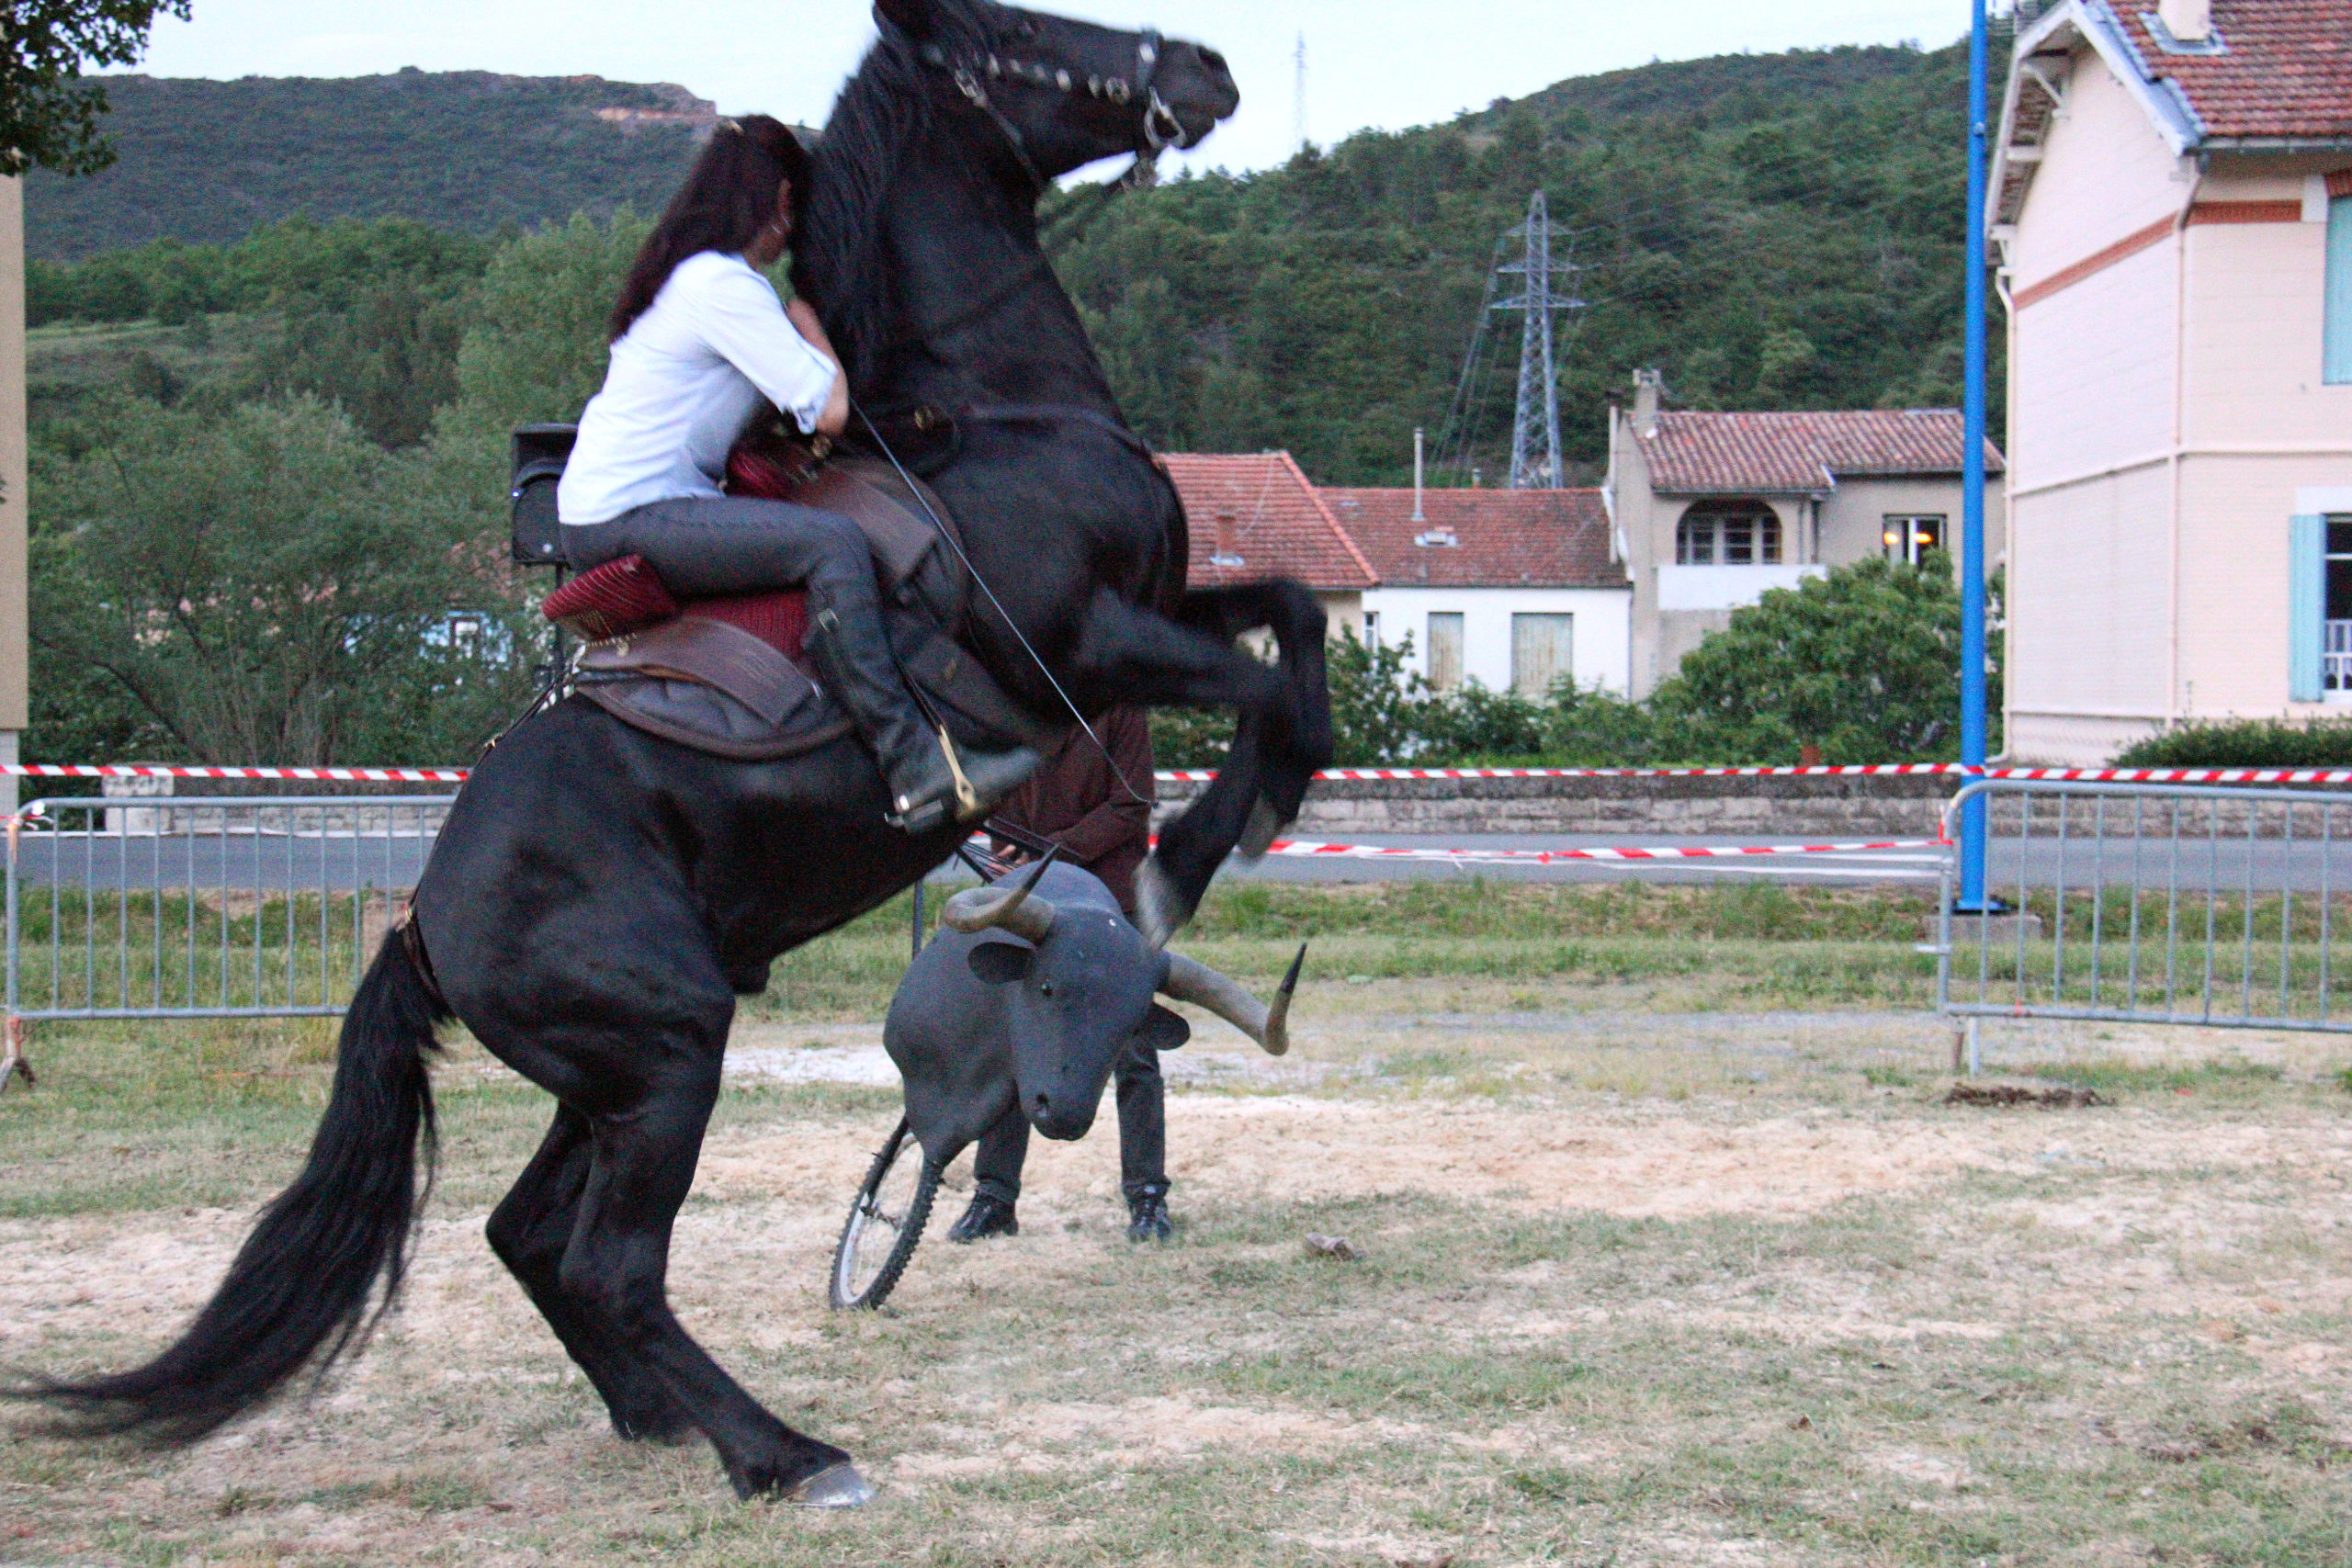 fete du cheval, Quillan : Fete du cheval 2015, VisitesVirtuelles.123.fr